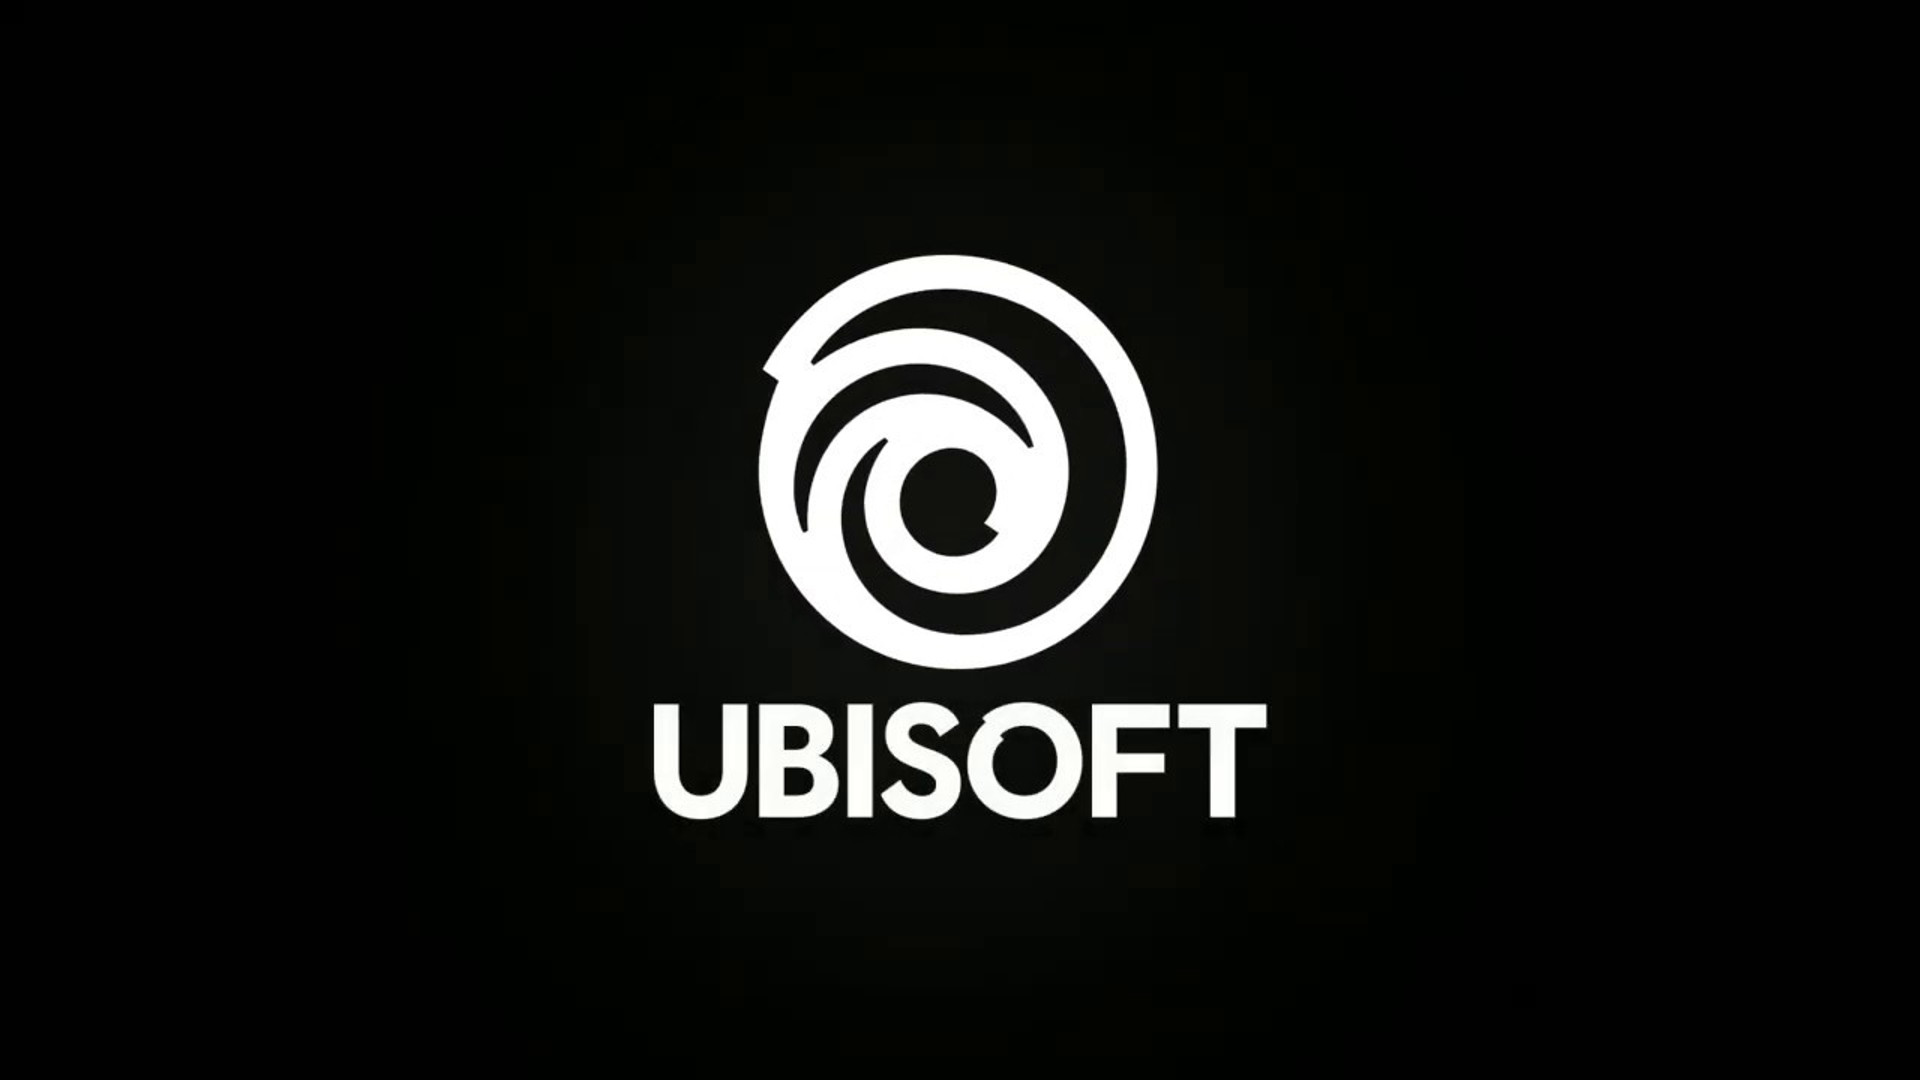 Ubisoft-ийн ажилчид удирдлагаасаа "бидний шаардлагыг зохих ёсоор хүлээн зөвшөөрөхийг" уриалж байна